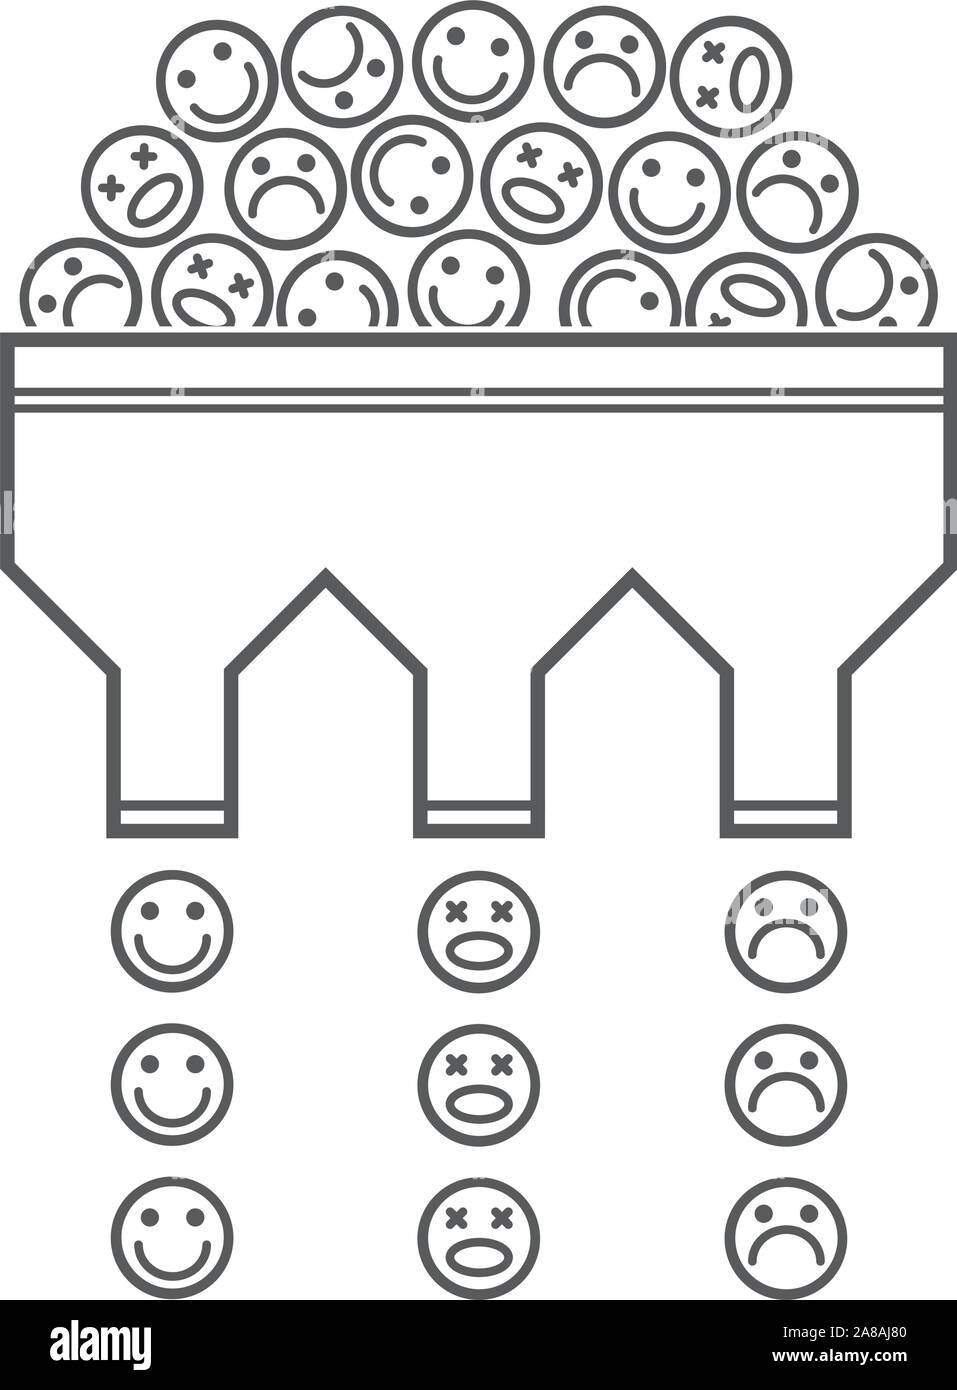 Riconoscimento dell'umore - processo di identificazione delle emozioni umane da espressioni del viso - illustrazione Illustrazione Vettoriale